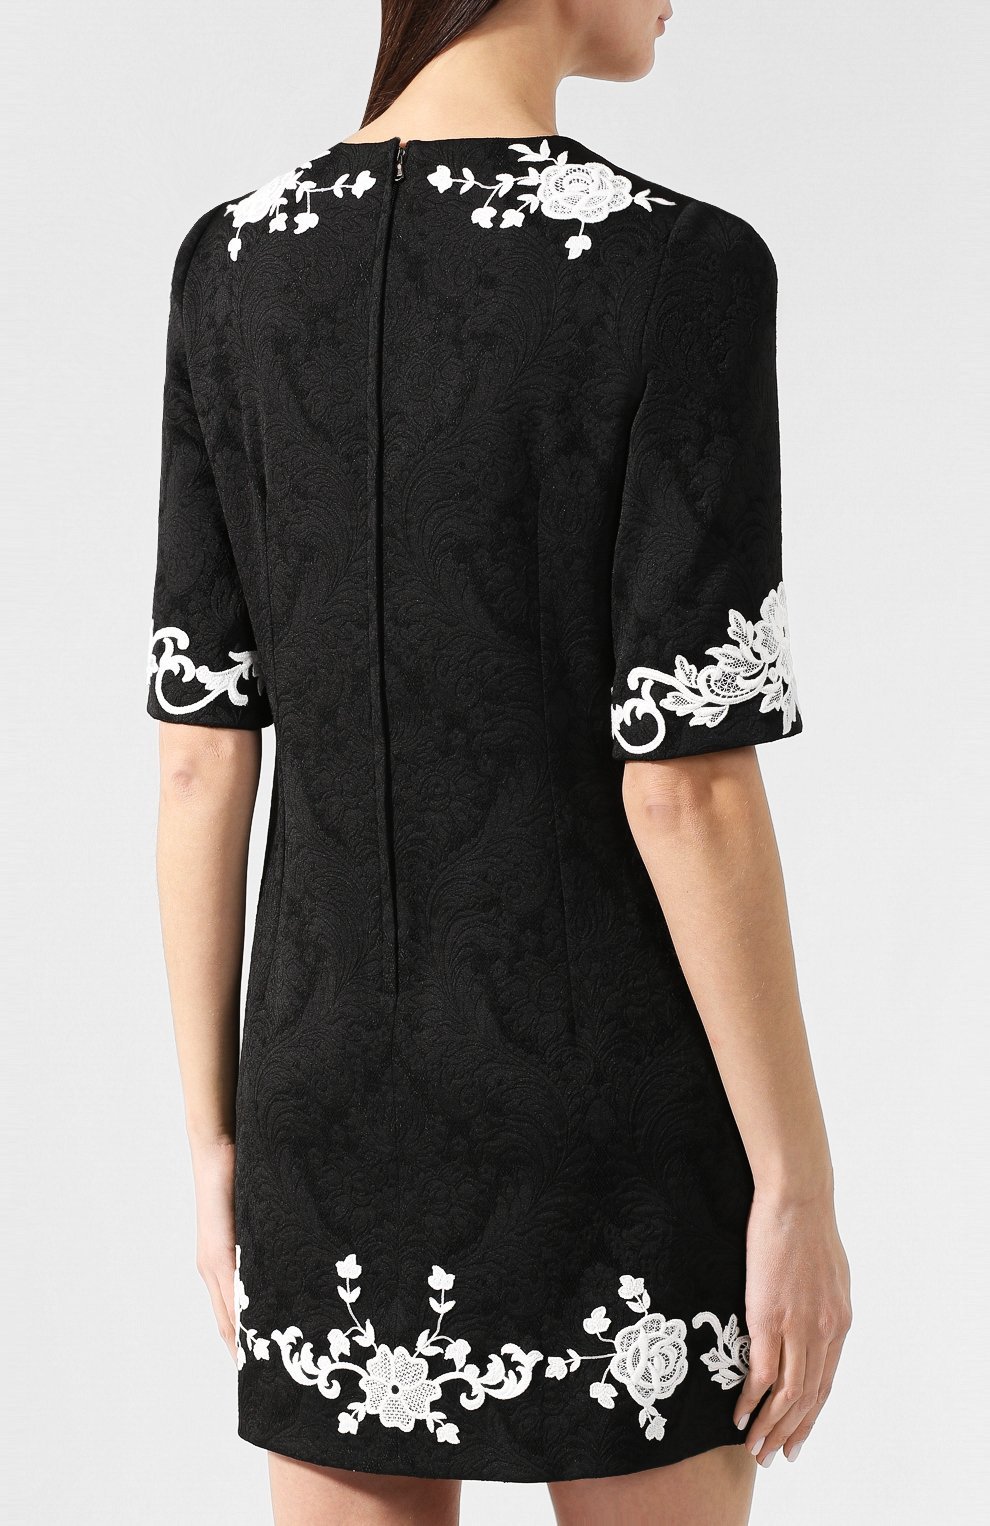 Жаккардовое платье | Dolce & Gabbana | Чёрно-белый - 6